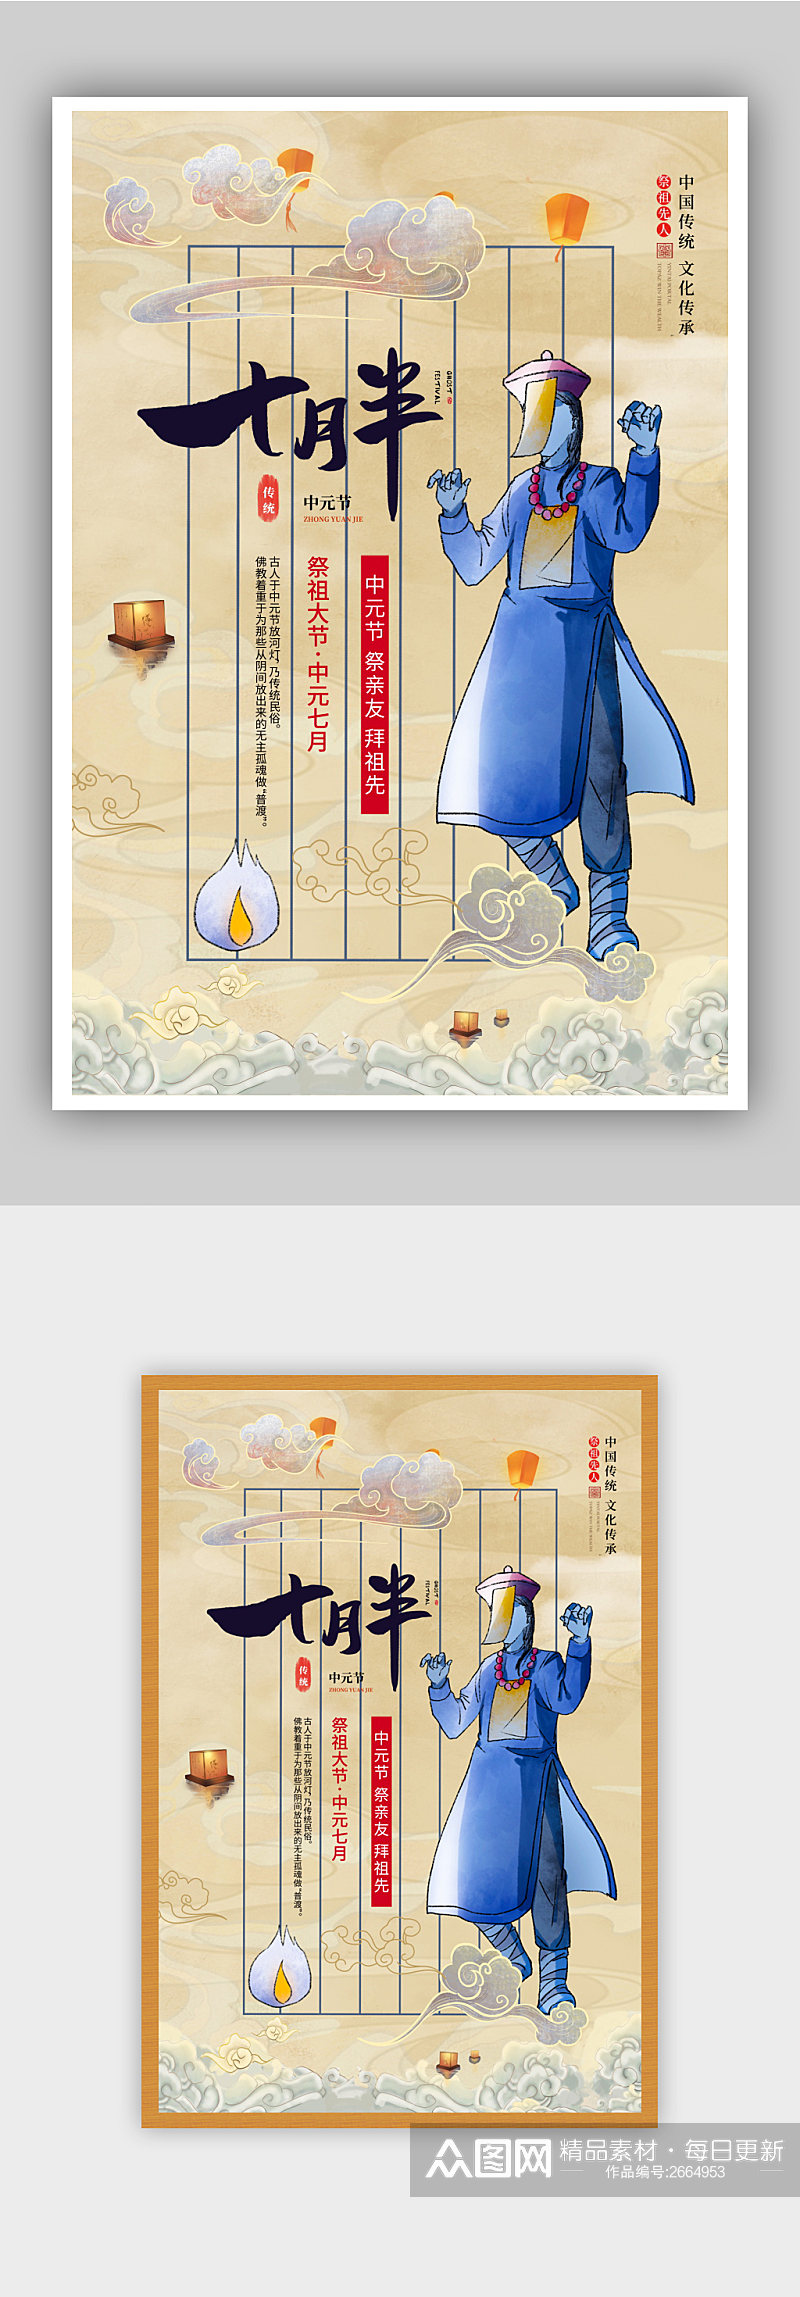 081602中国风中元节祭祖海报素材